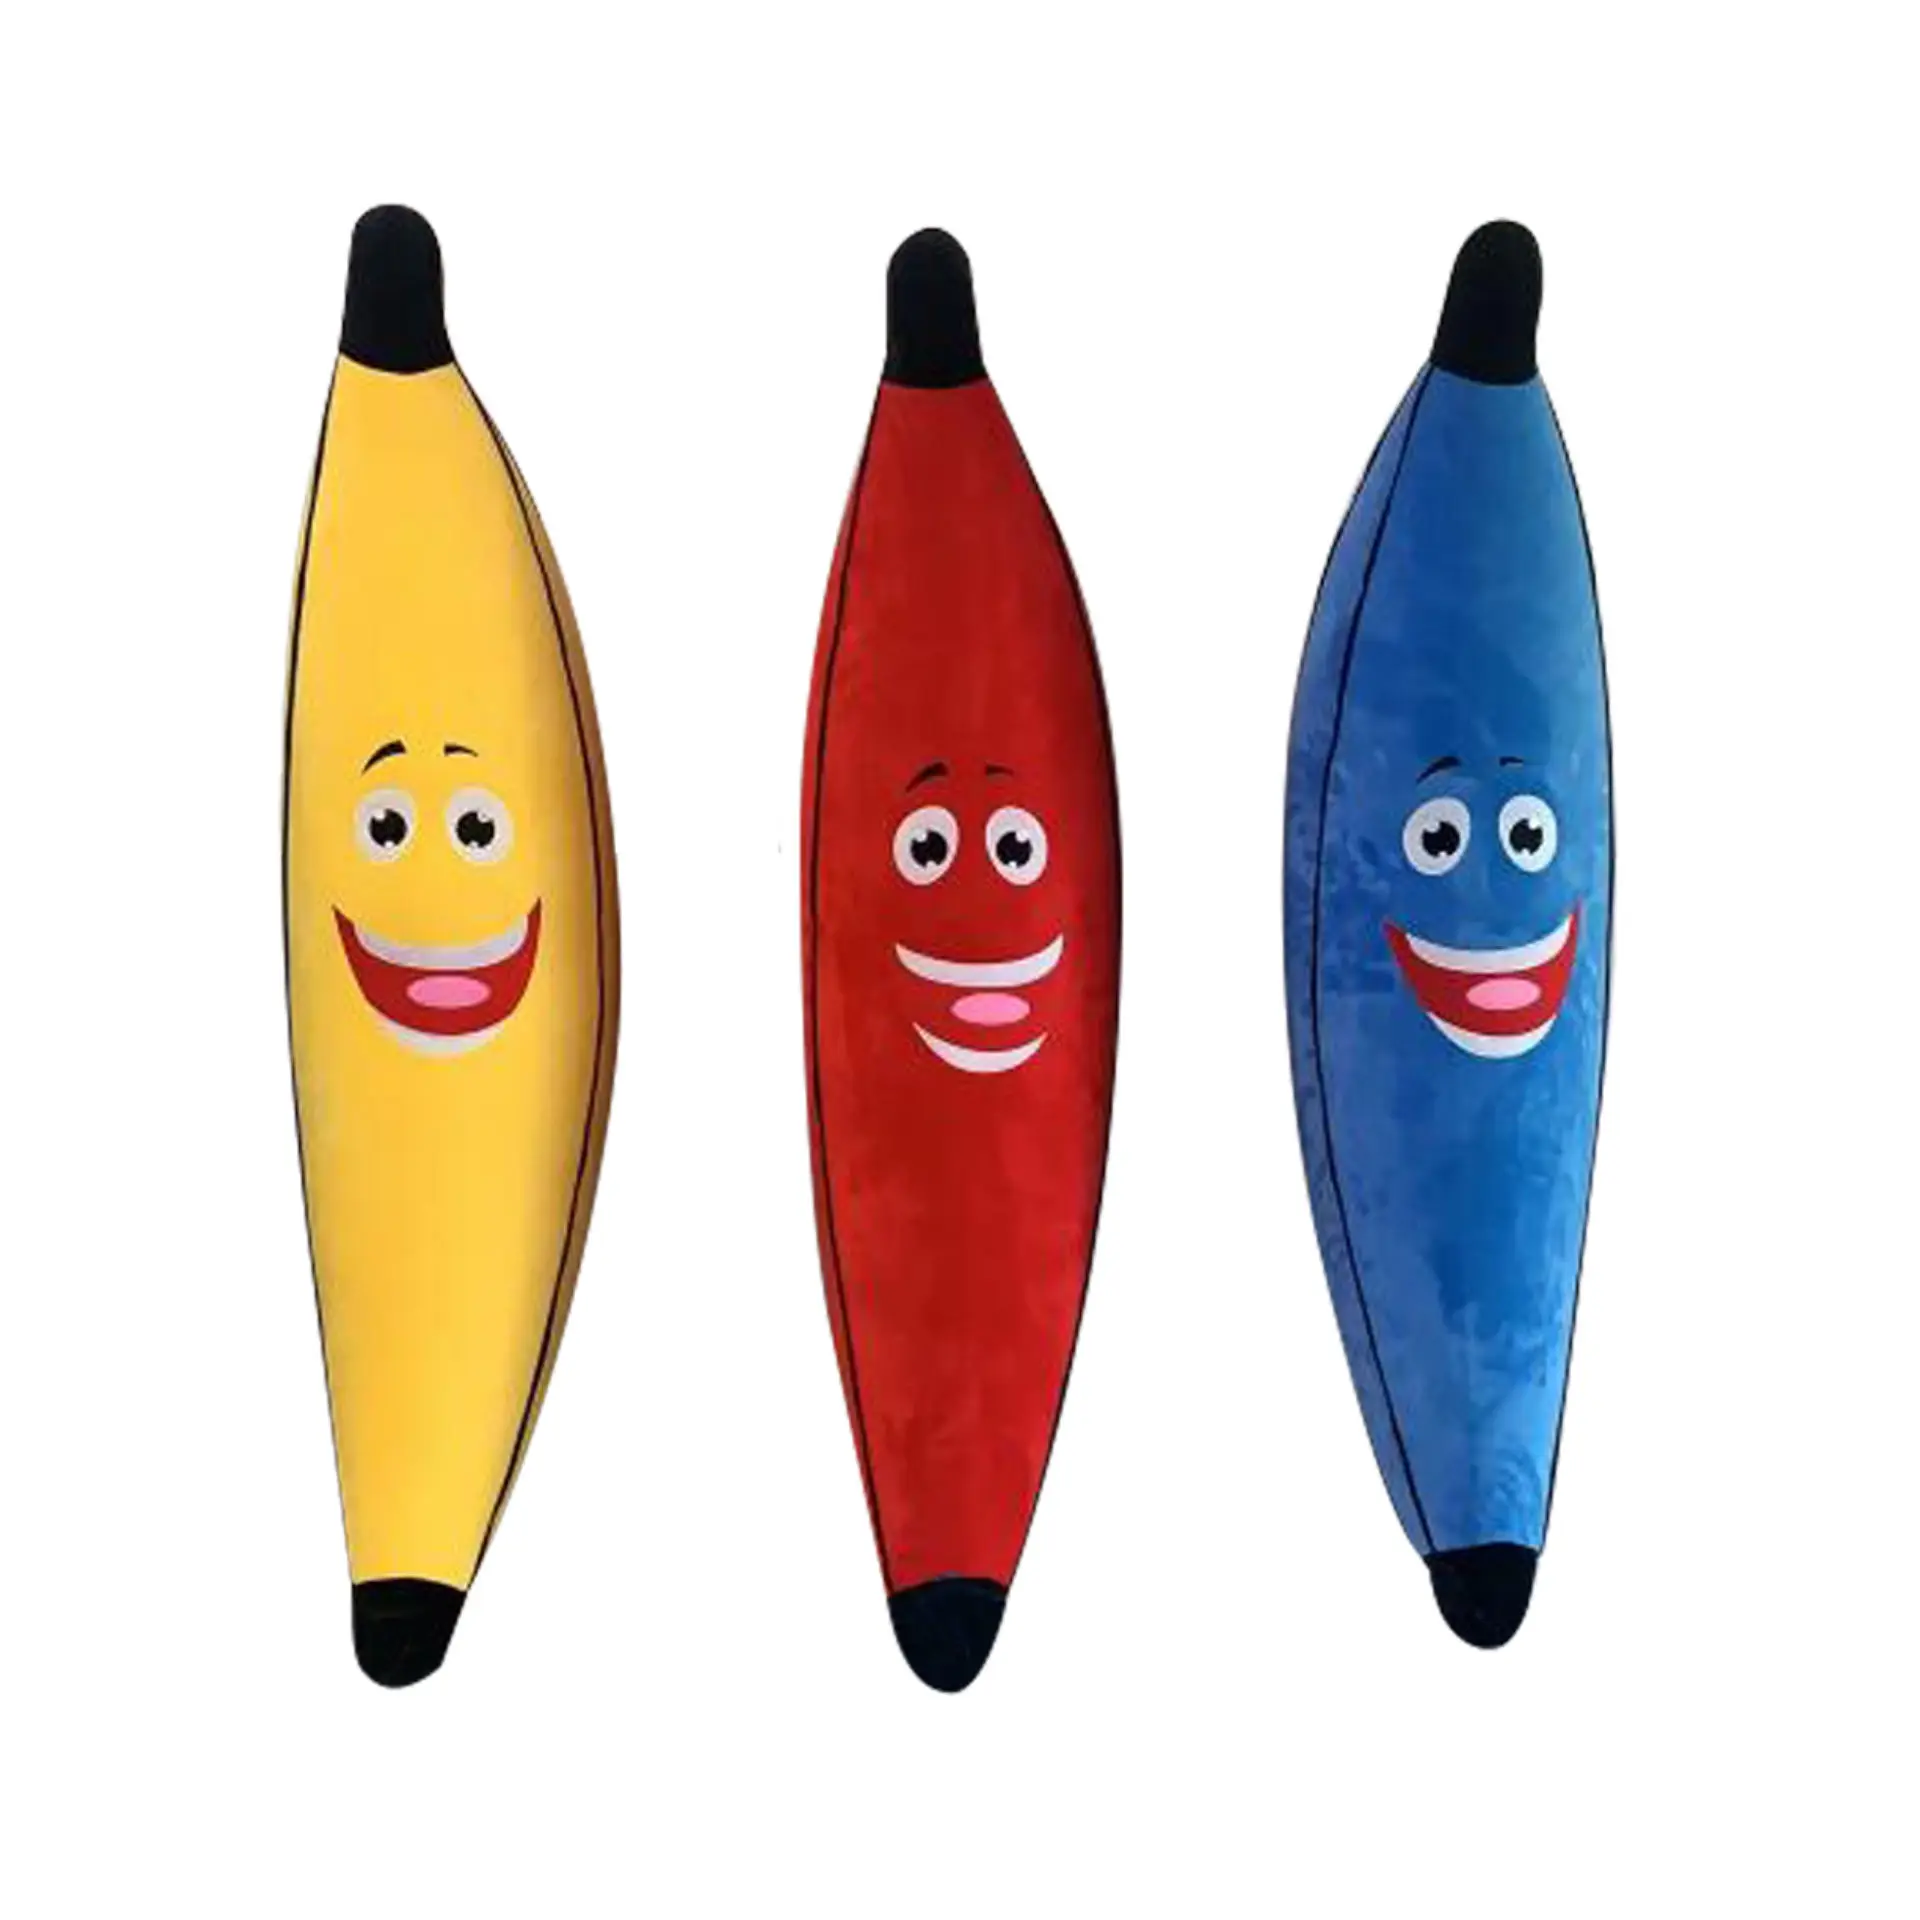 Giant Banana Inflatable Plush Toy Customized Available 180cm Inflatable Banana Plush Toy In Bulk